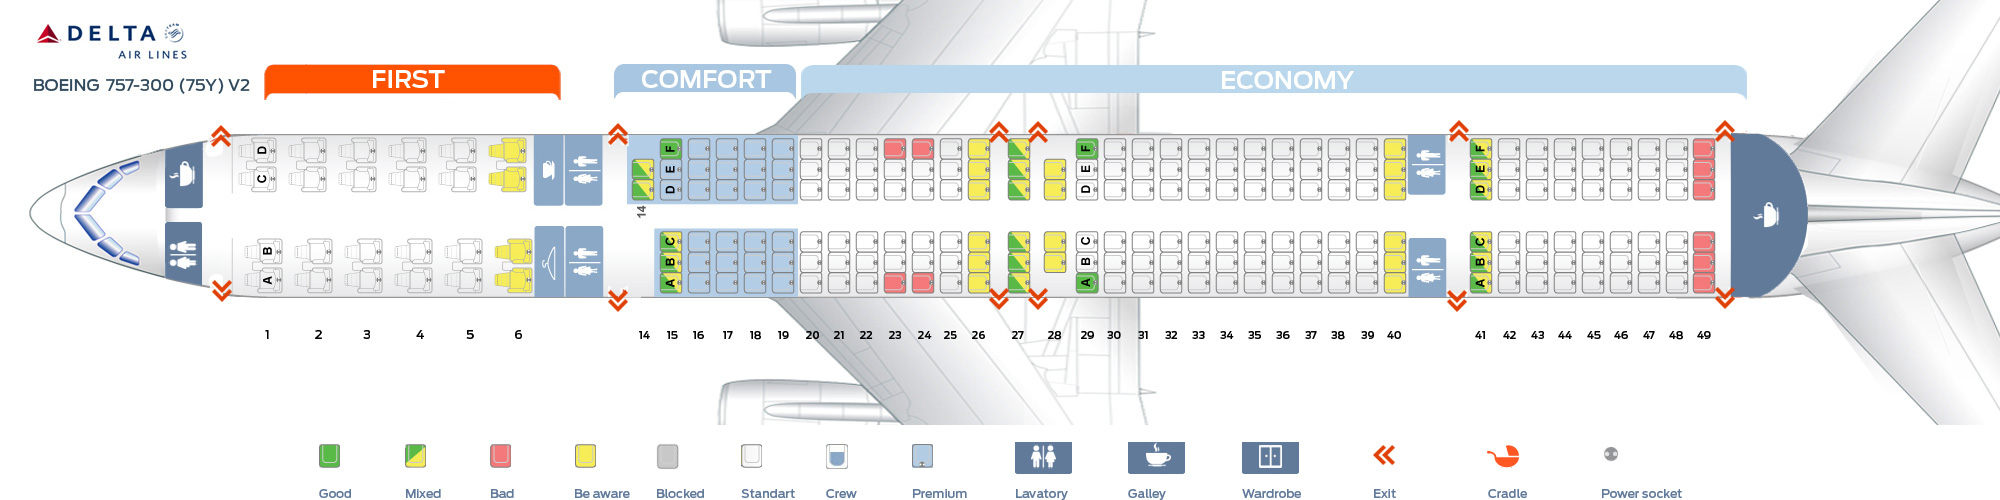 Delta Flight 30 Seating Chart